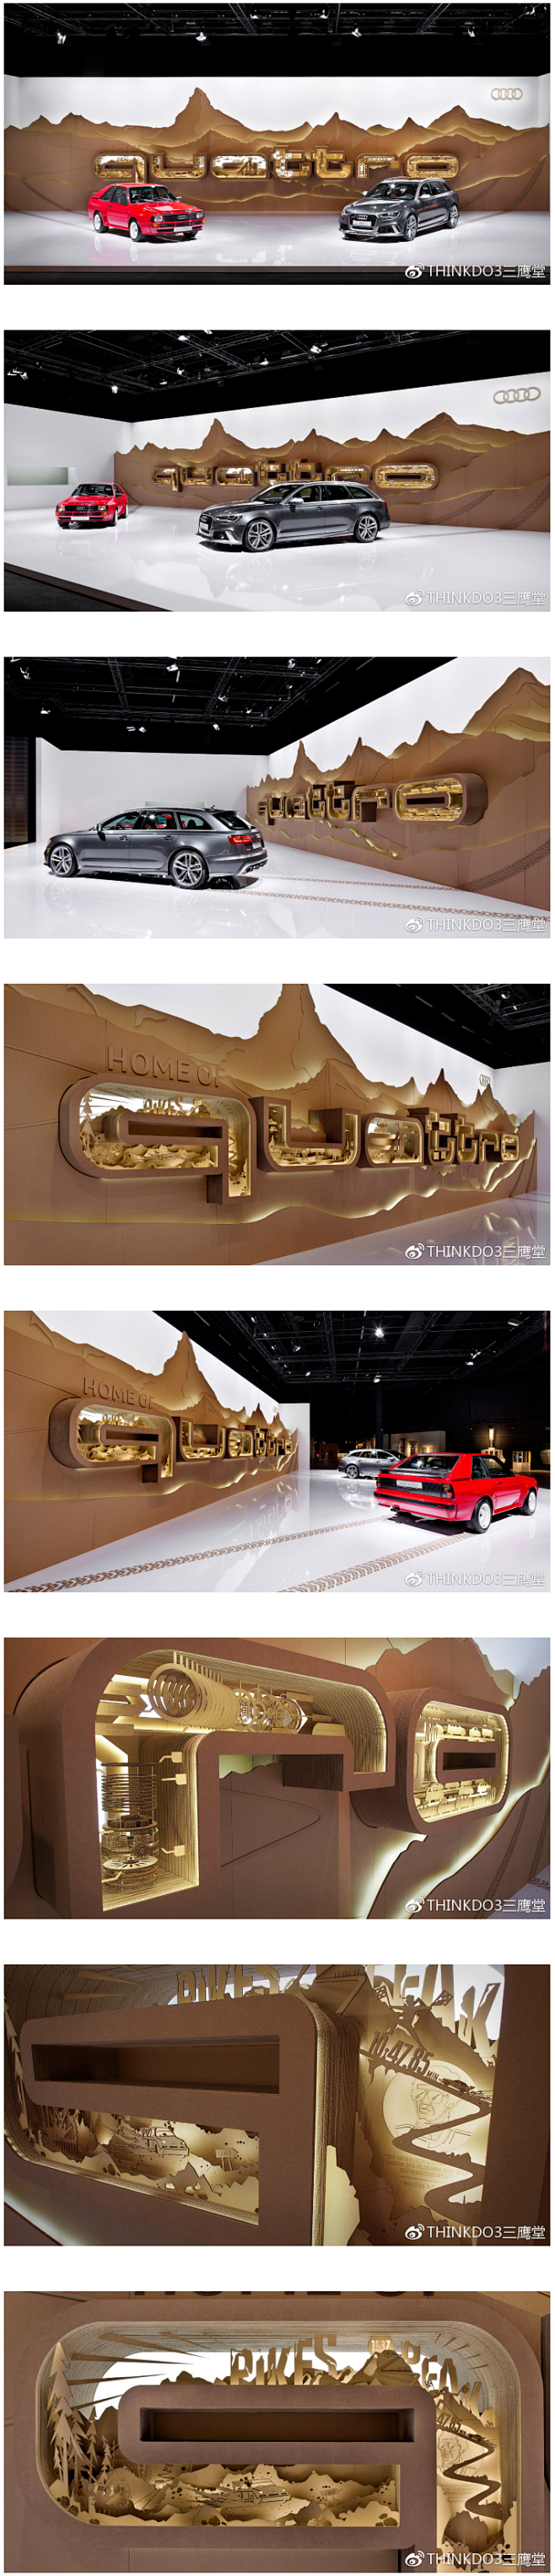 Audi迈阿密汽车展厅设计